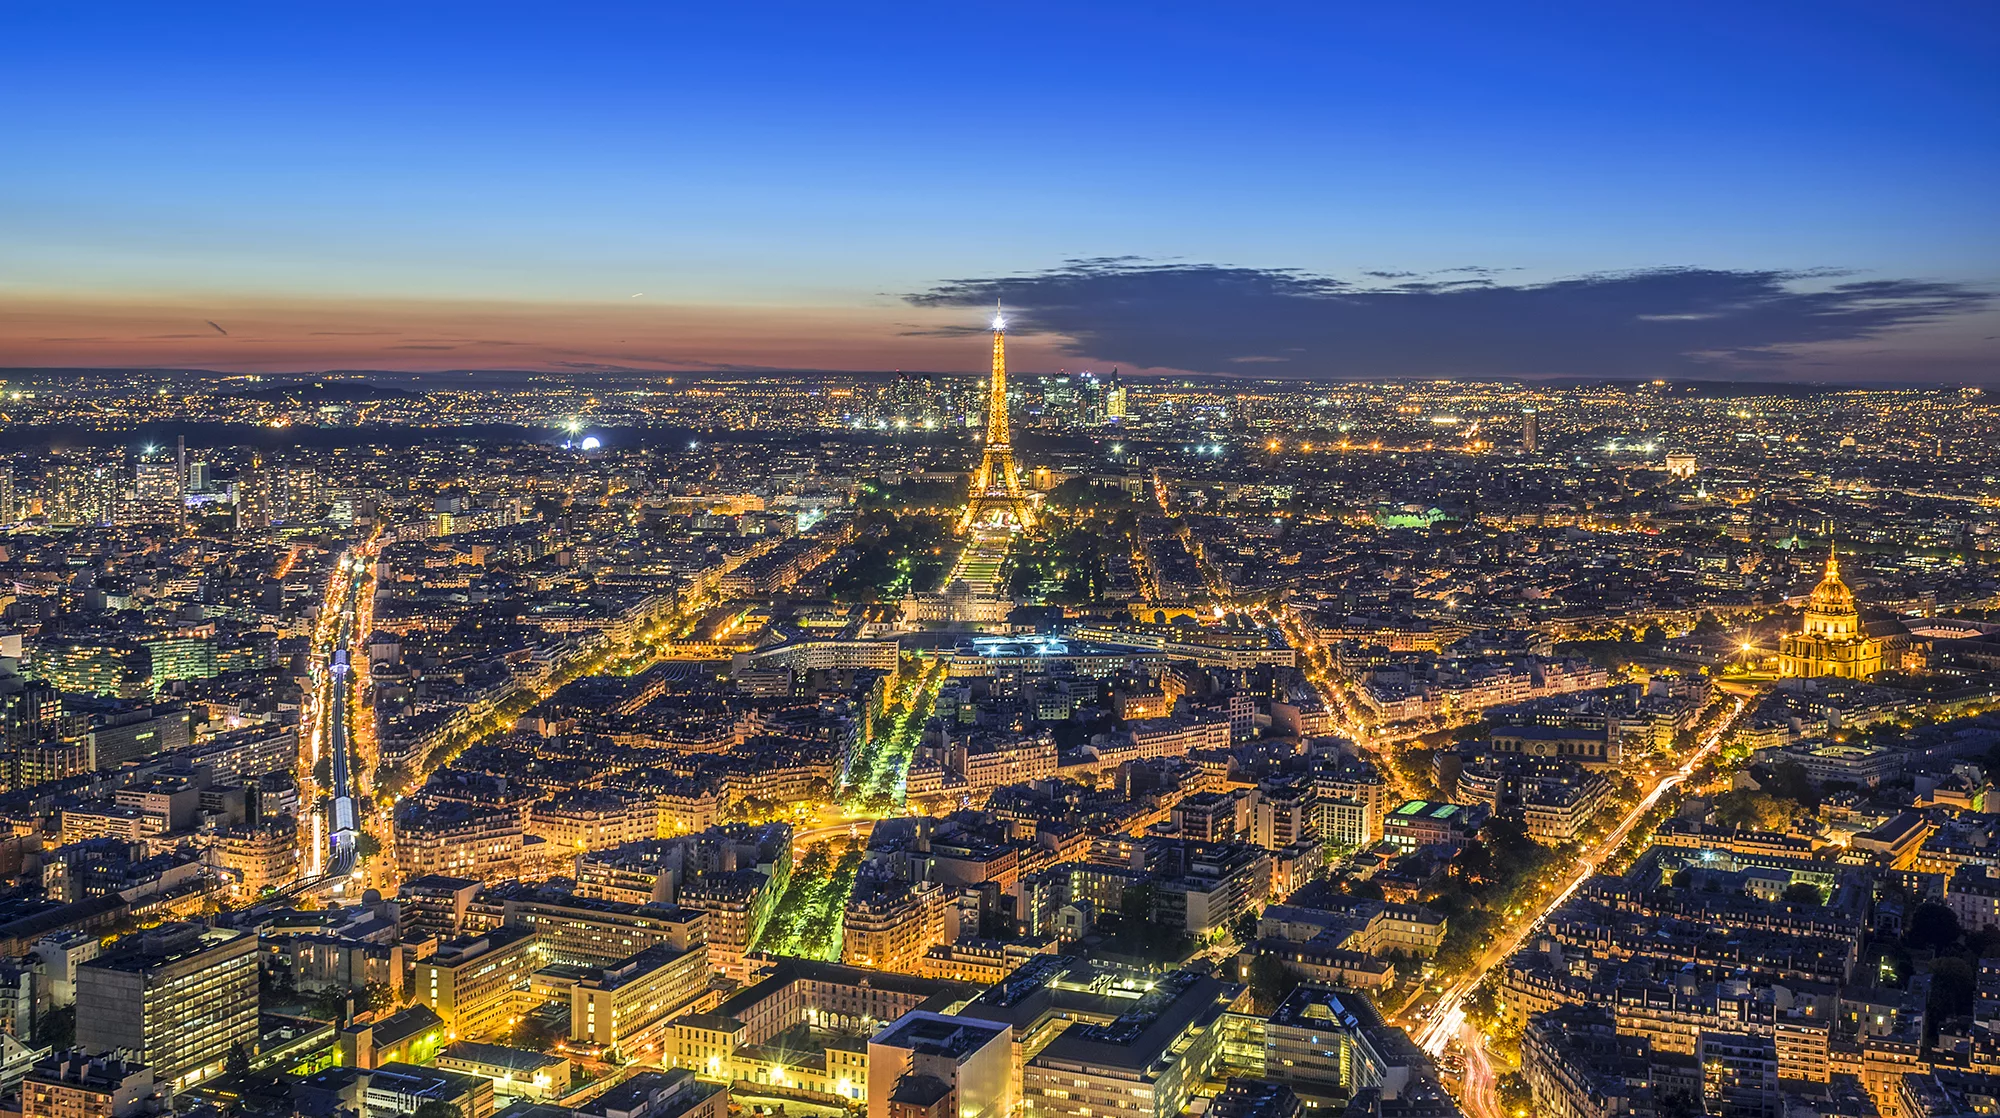 56th Floor Of Tour Montparnasse Paris France.webp?h=1400&q=83